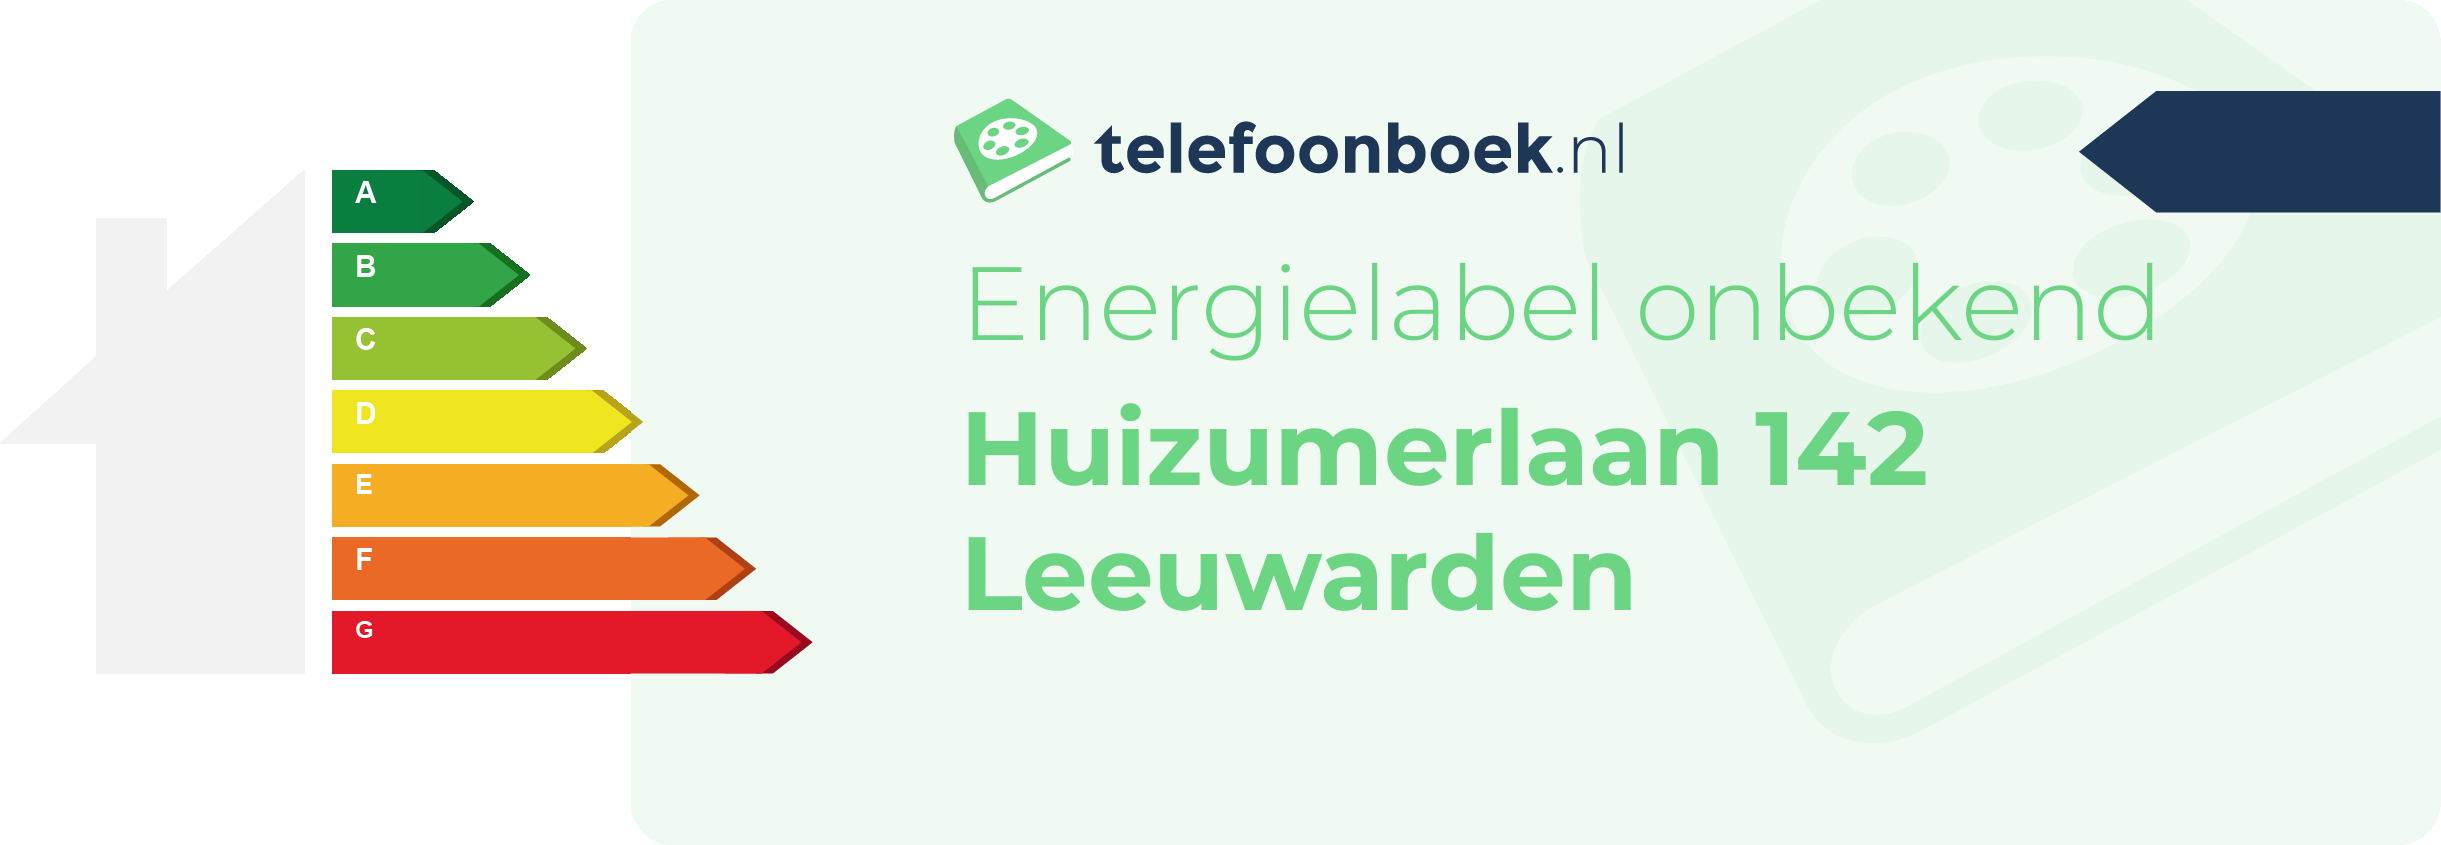 Energielabel Huizumerlaan 142 Leeuwarden